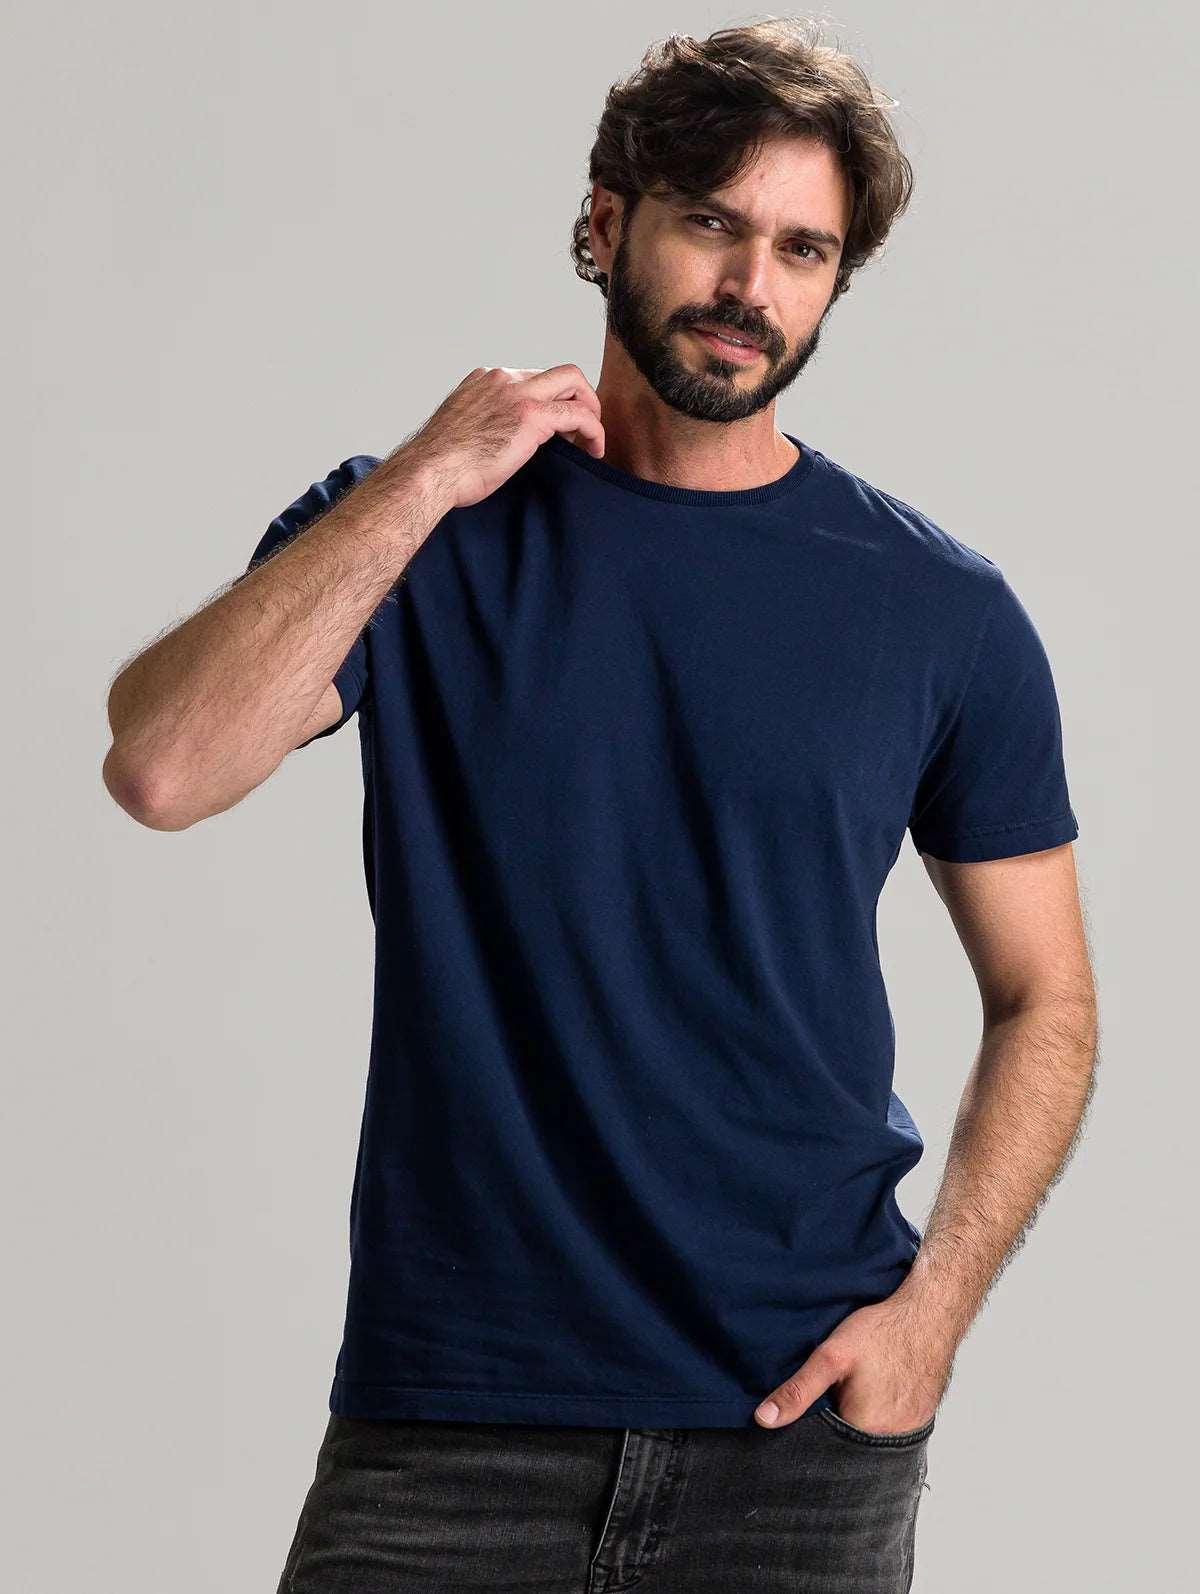 Camiseta feminina T-shirt básica algodão azul marinho em Promoção